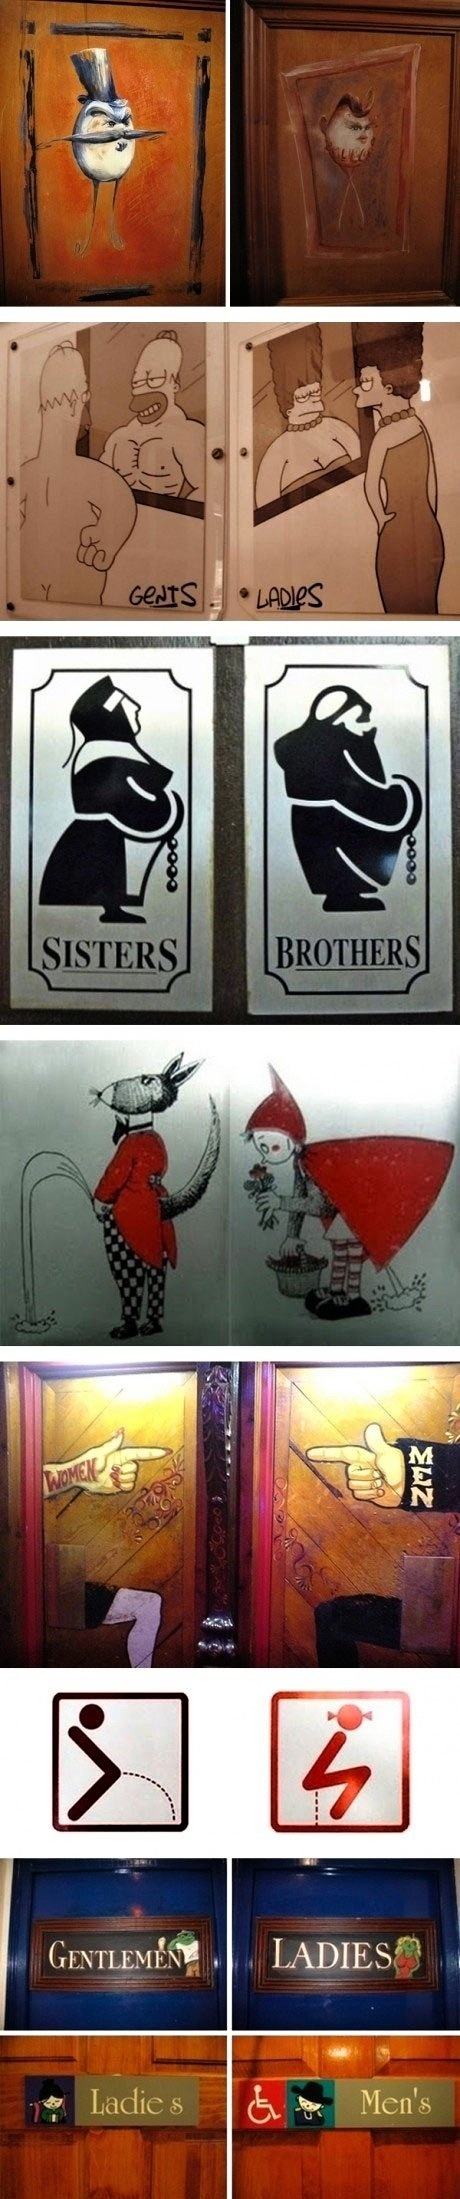 Obrázek Funny Toilet Signs 06-02-2012